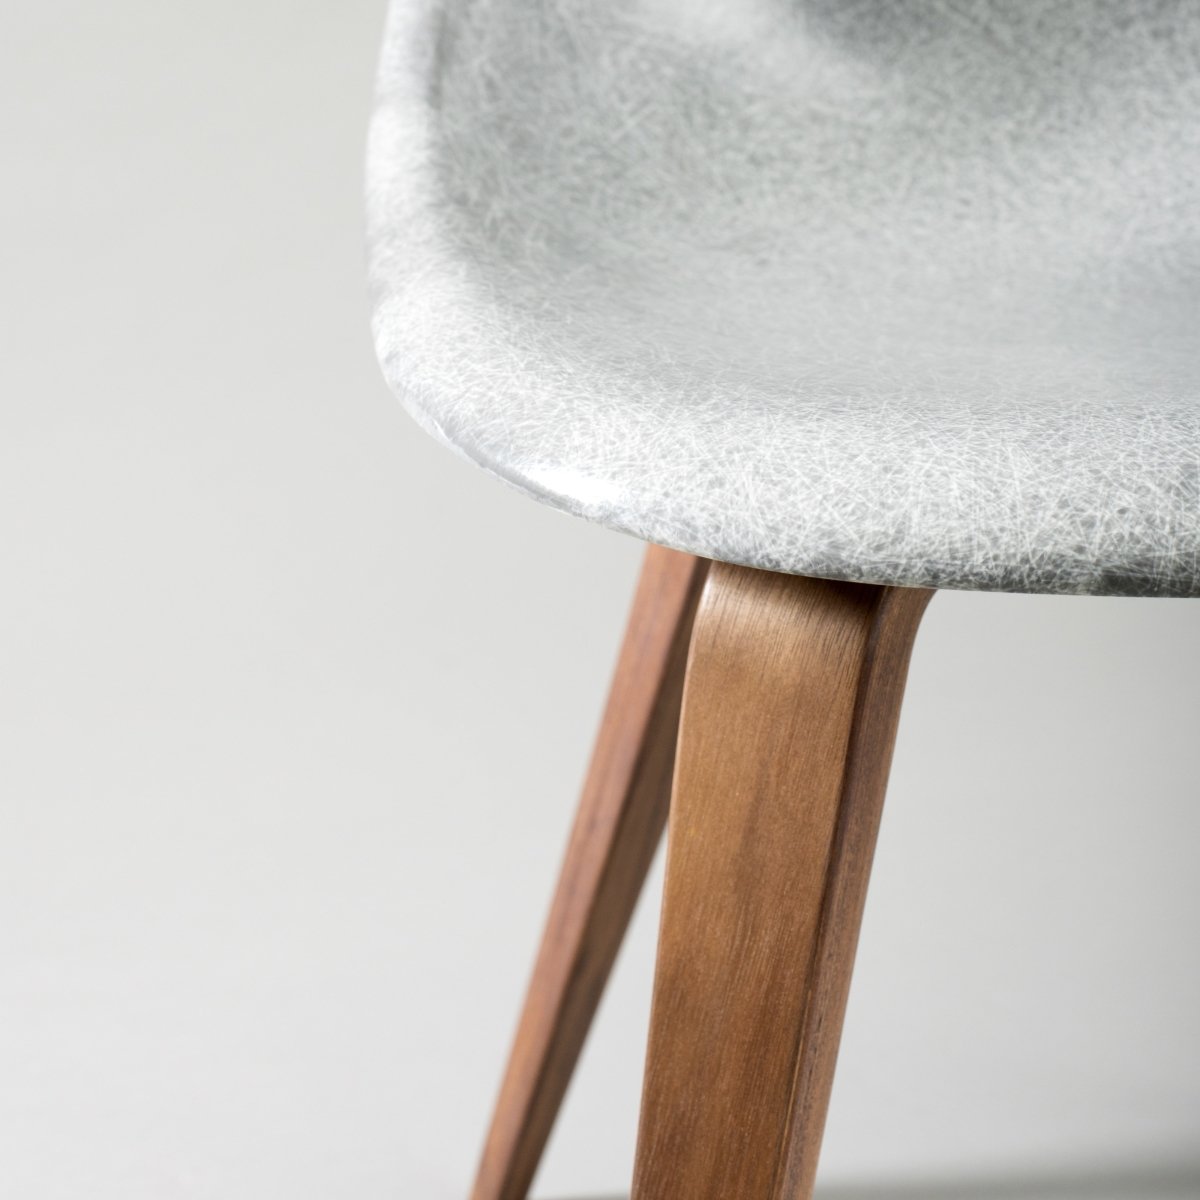 Modernica Case Study Side Shell Spyder Base - Gray Fiberglass Chair - By Autotype